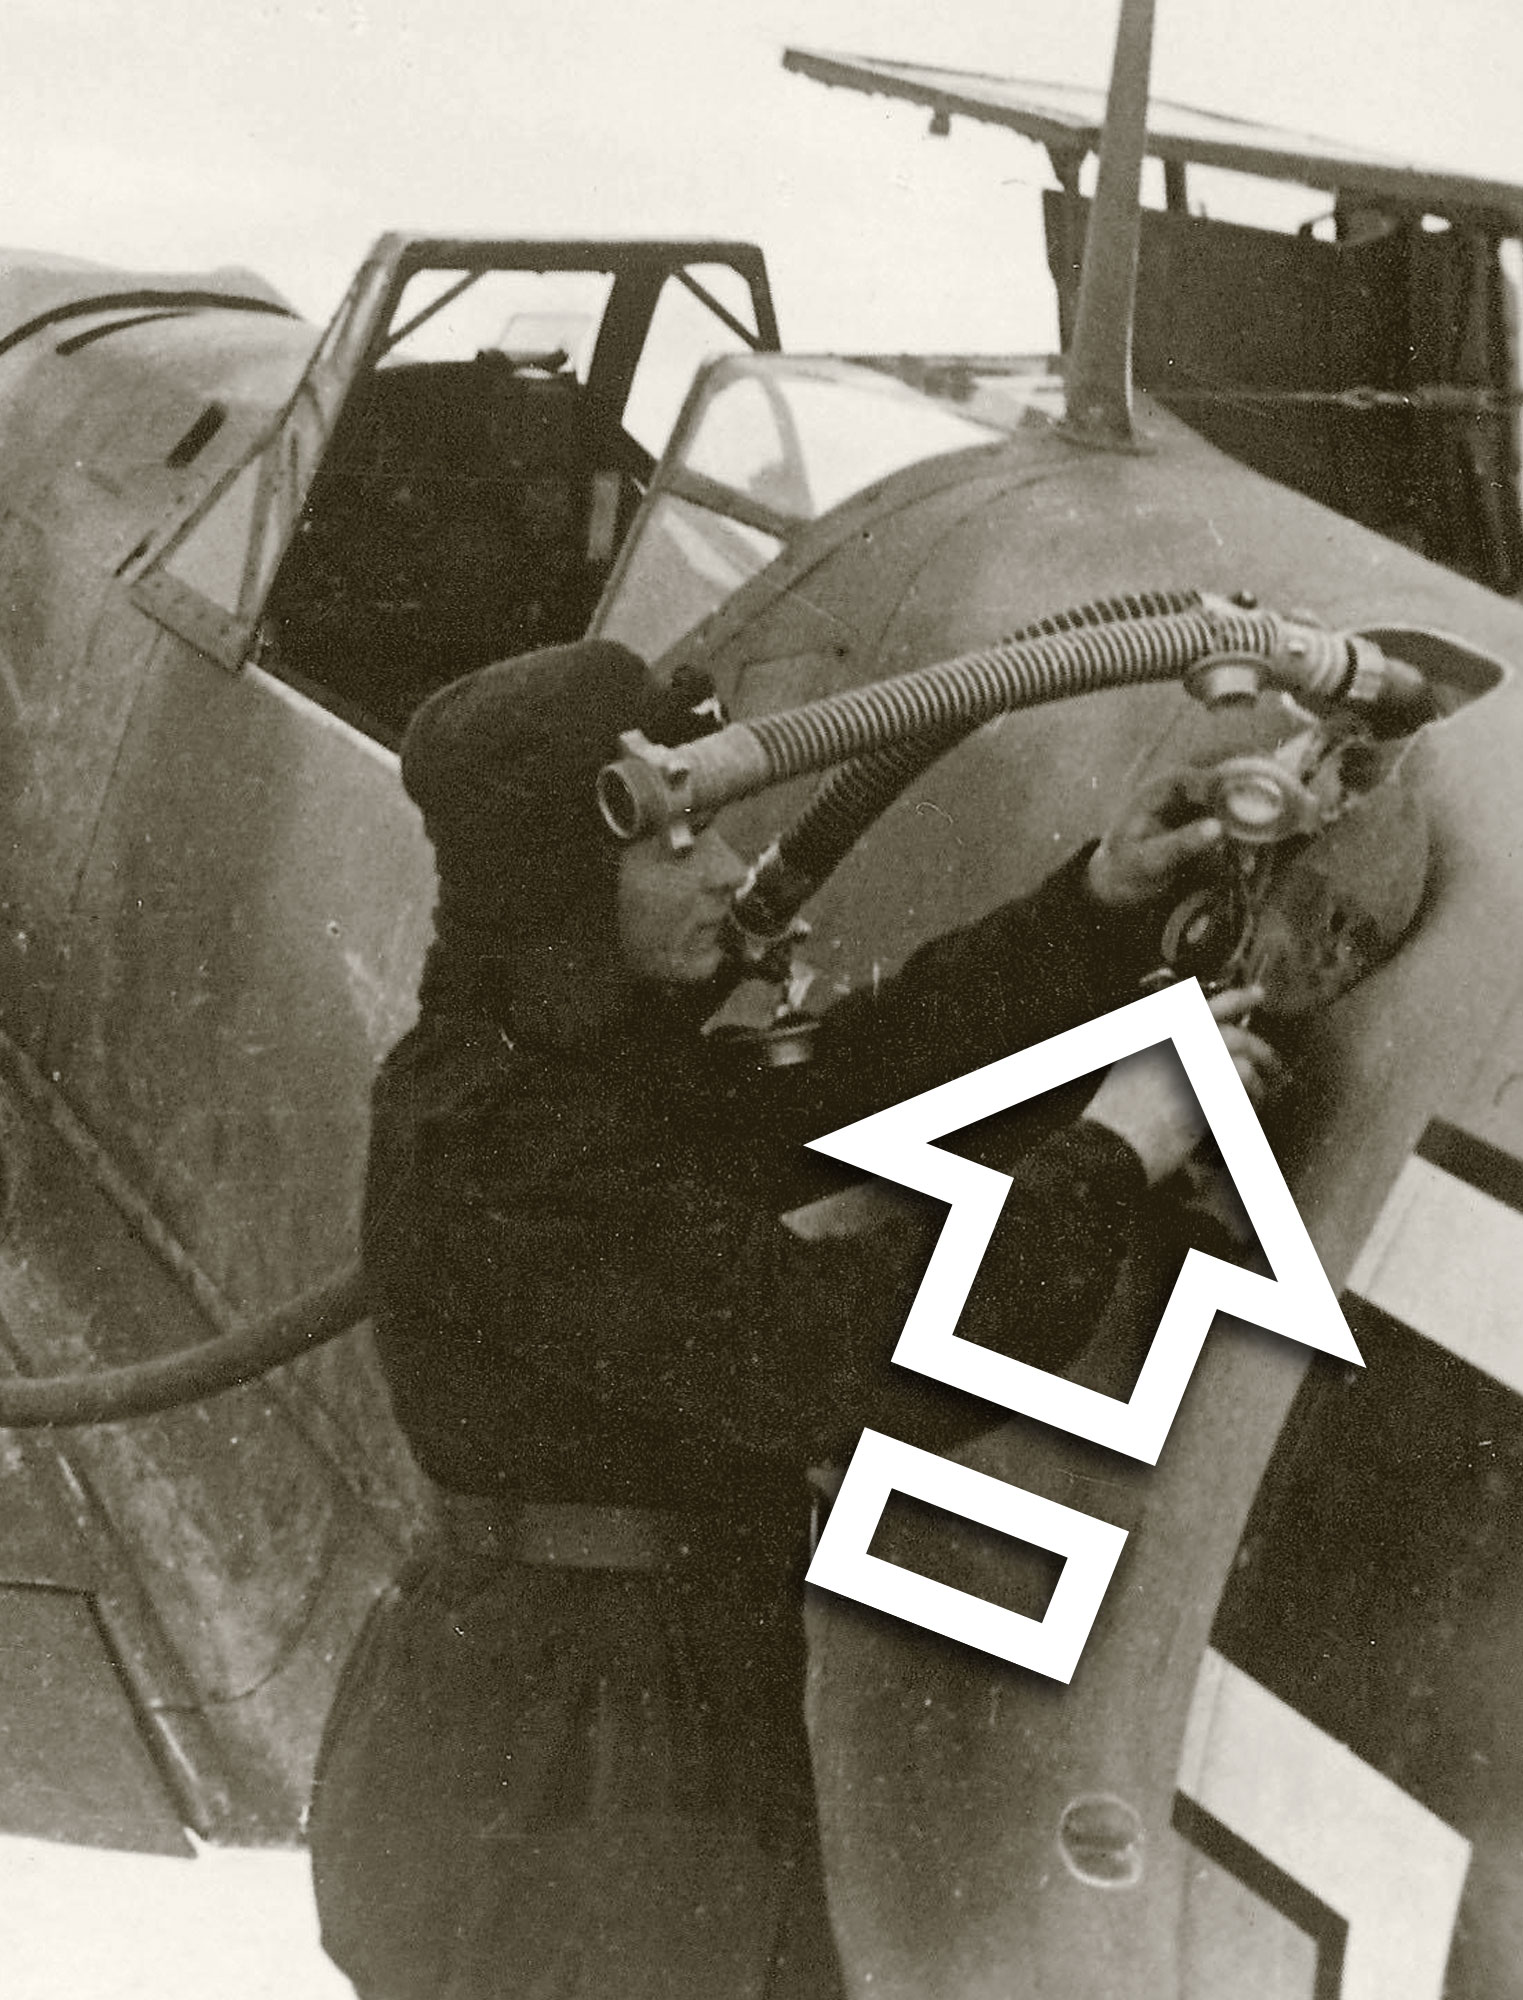 MESSERSCHMITT Bf 109 MAIN TANK, VENTILATED FUEL CAP